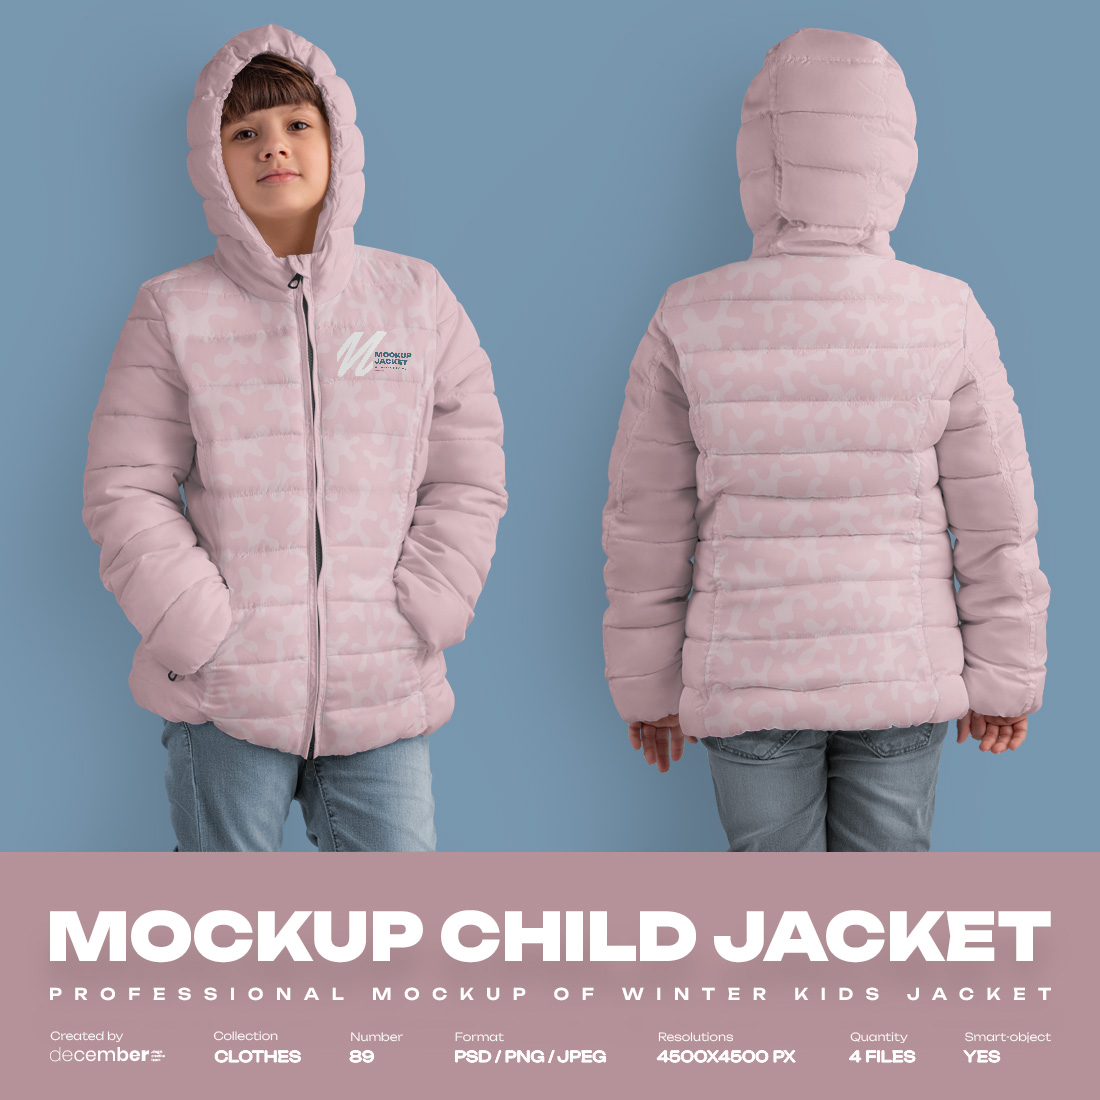 4 Mockups of a Kids Jacket cover image.